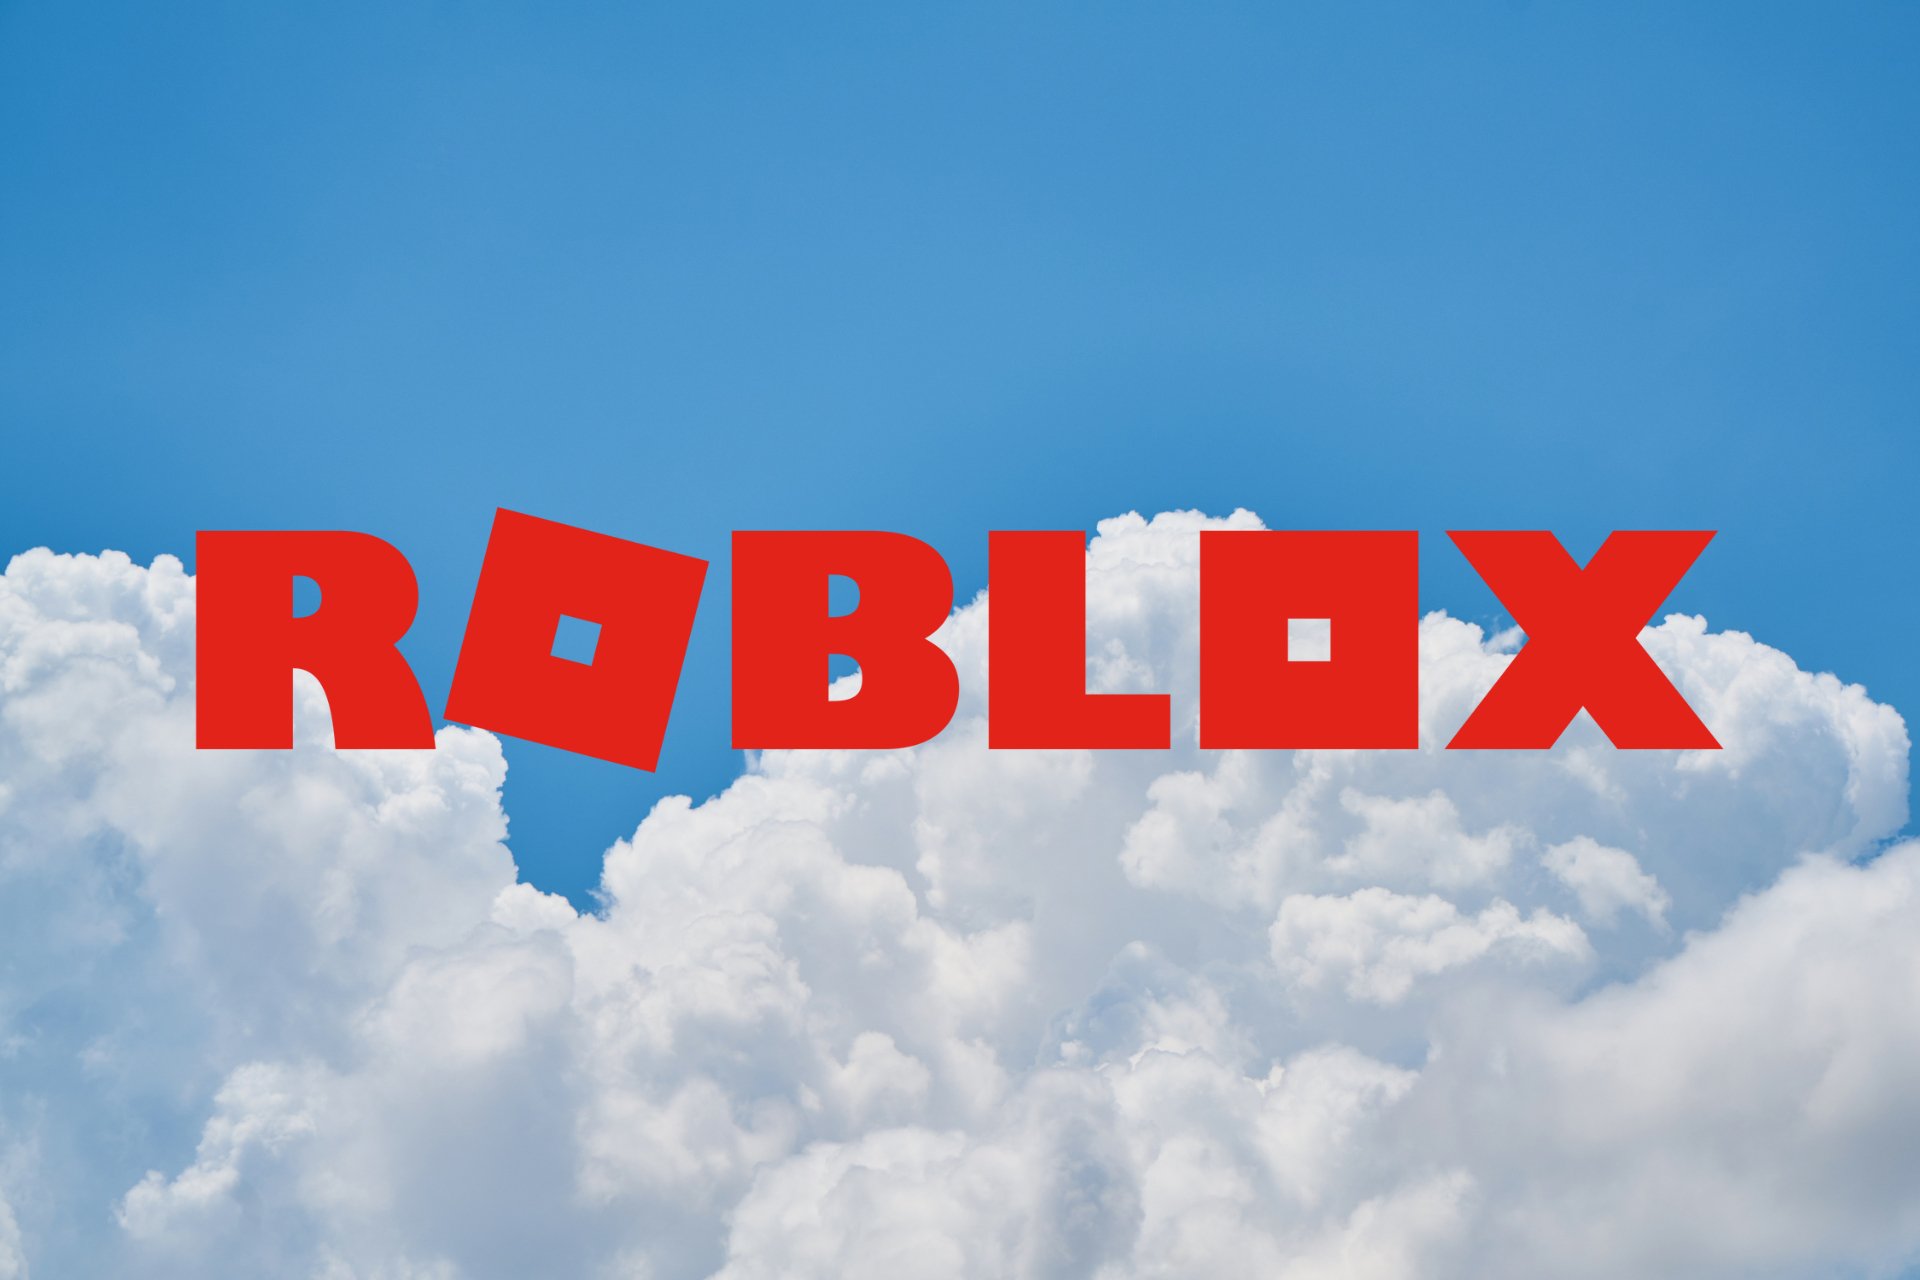 Understanding Error Code 1001 Roblox - How To Deal With It?